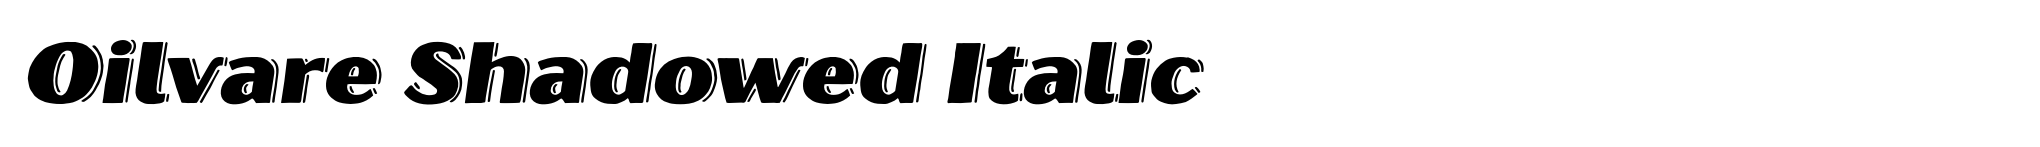 Oilvare Shadowed Italic image